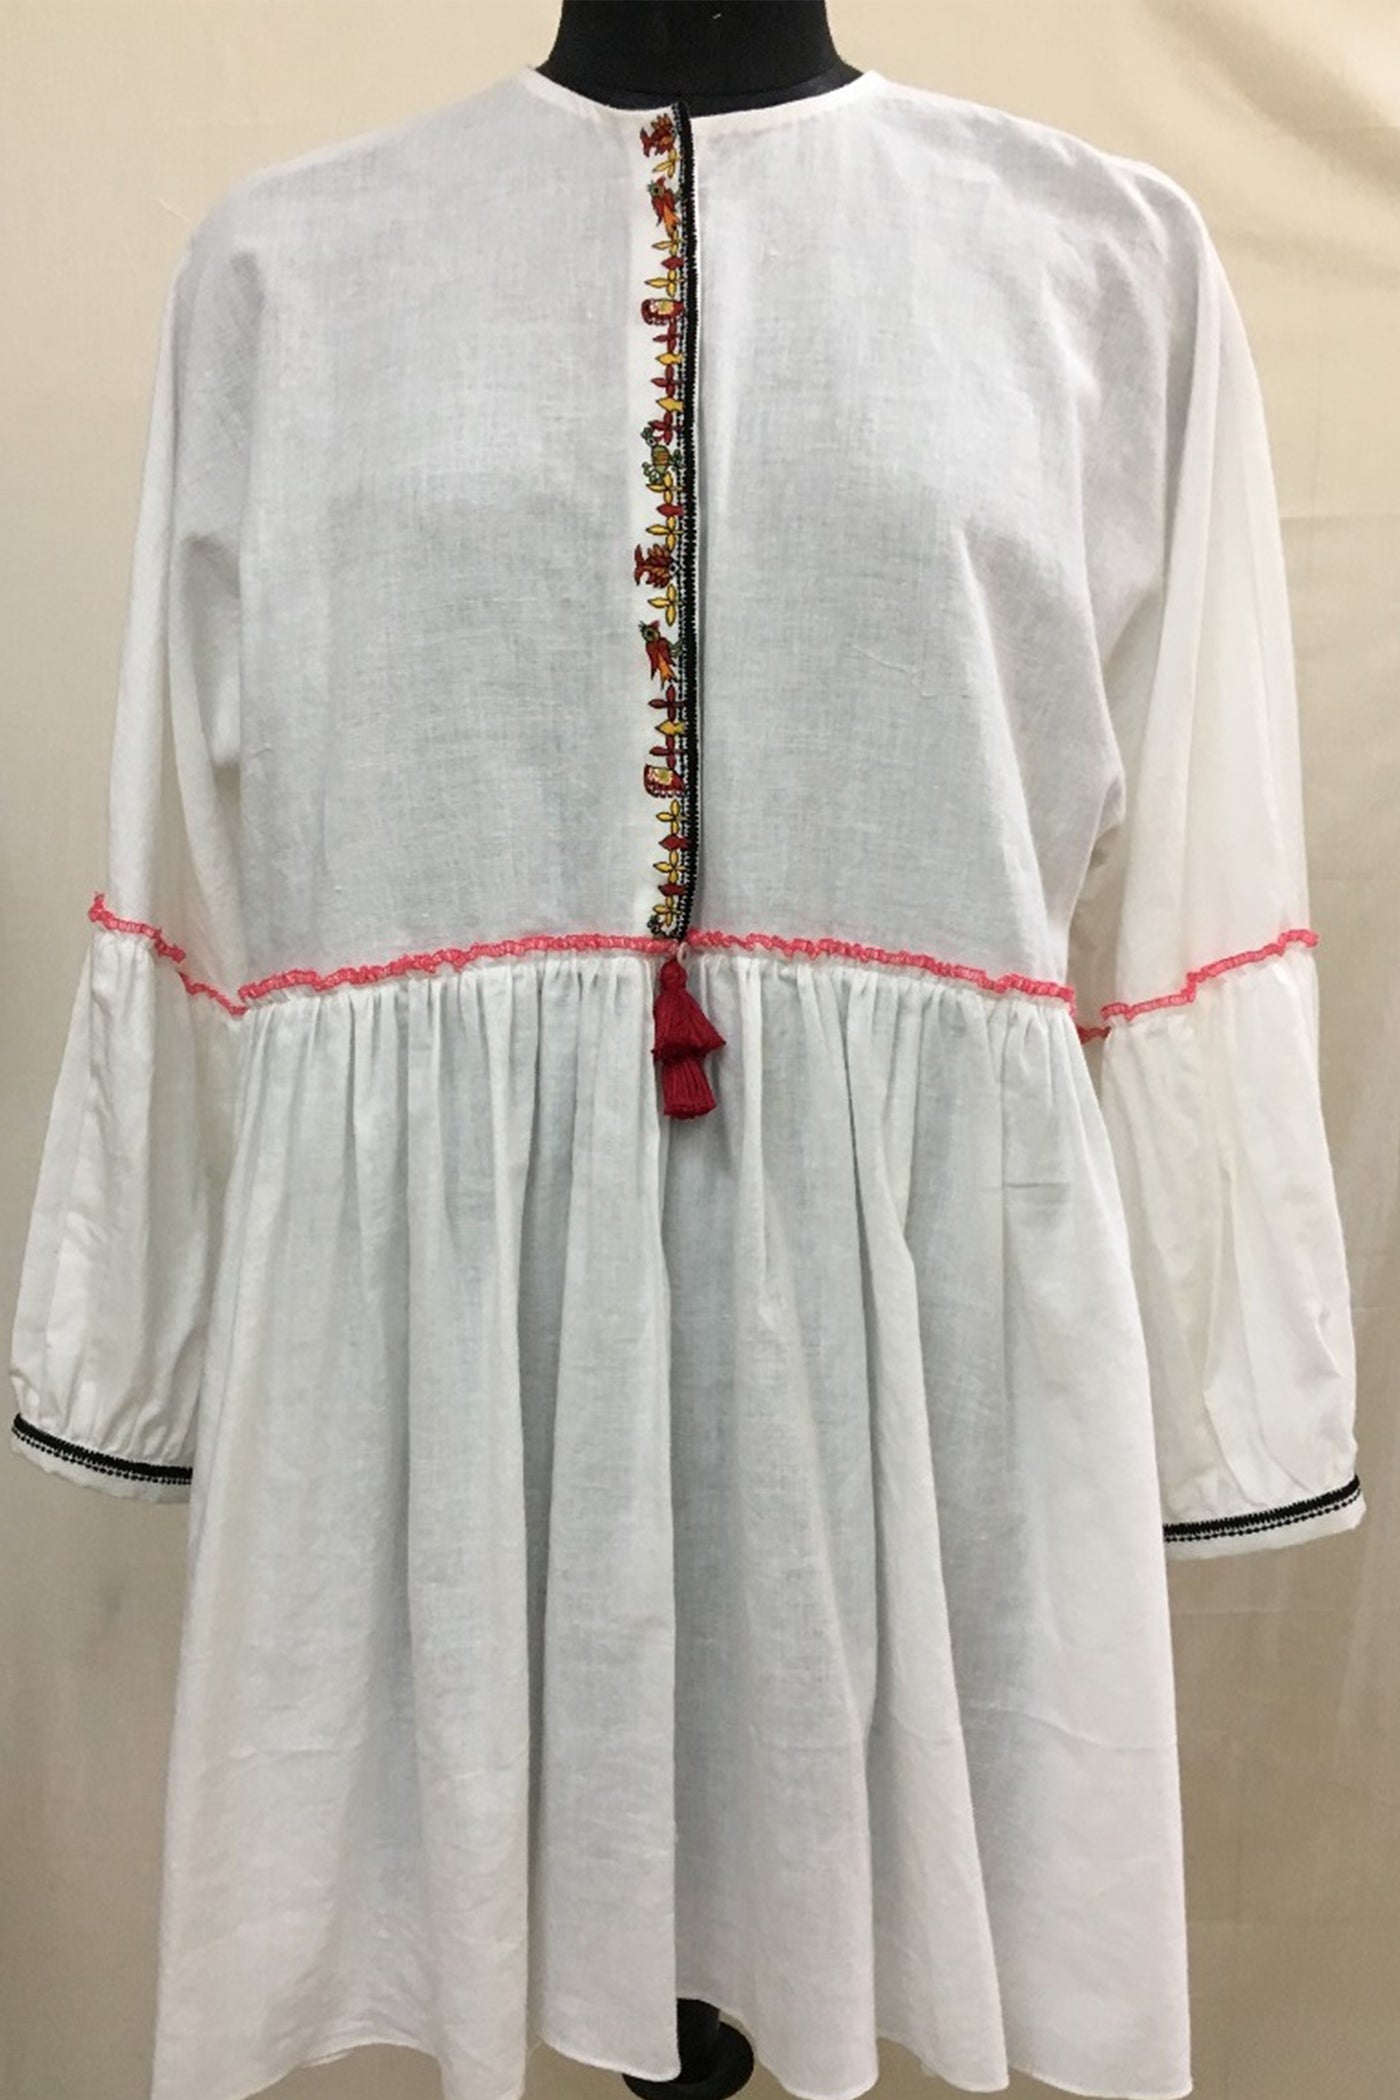 Nika Nikasha Hand woven embroidered dress white Indian Designer wear Melange Singapore Online Shopping sustainable fashion clothing